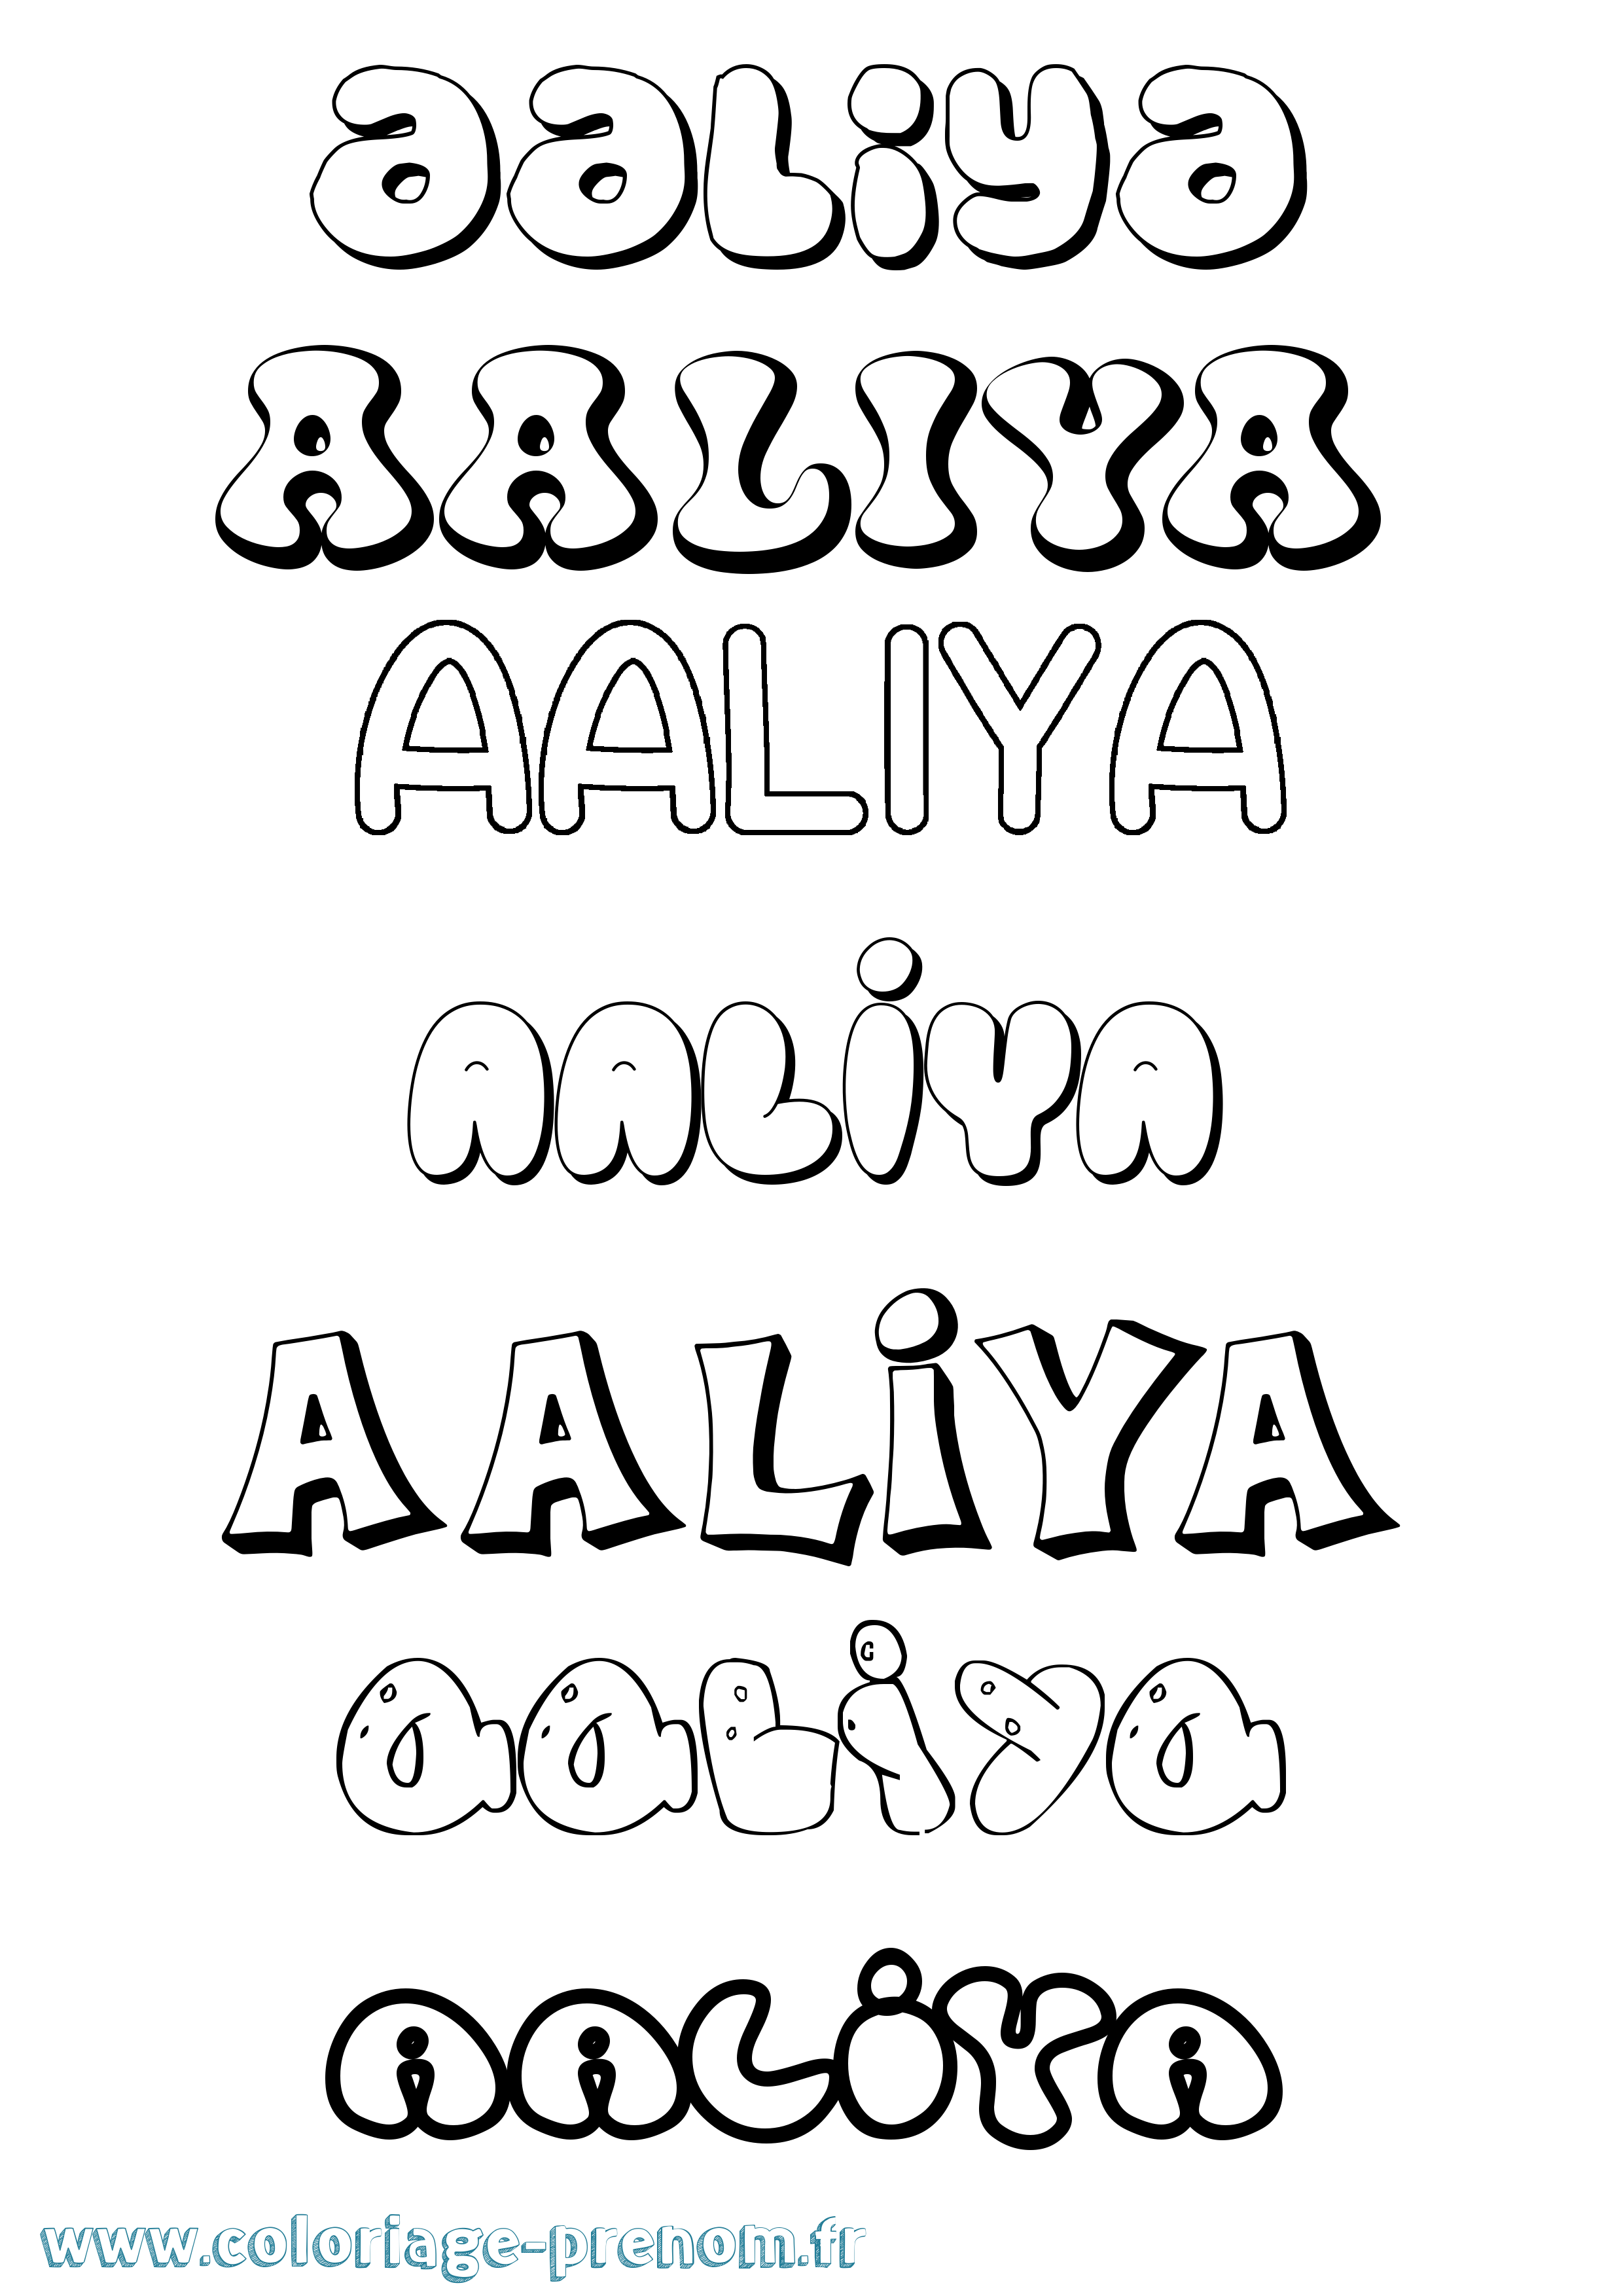 Coloriage prénom Aaliya Bubble